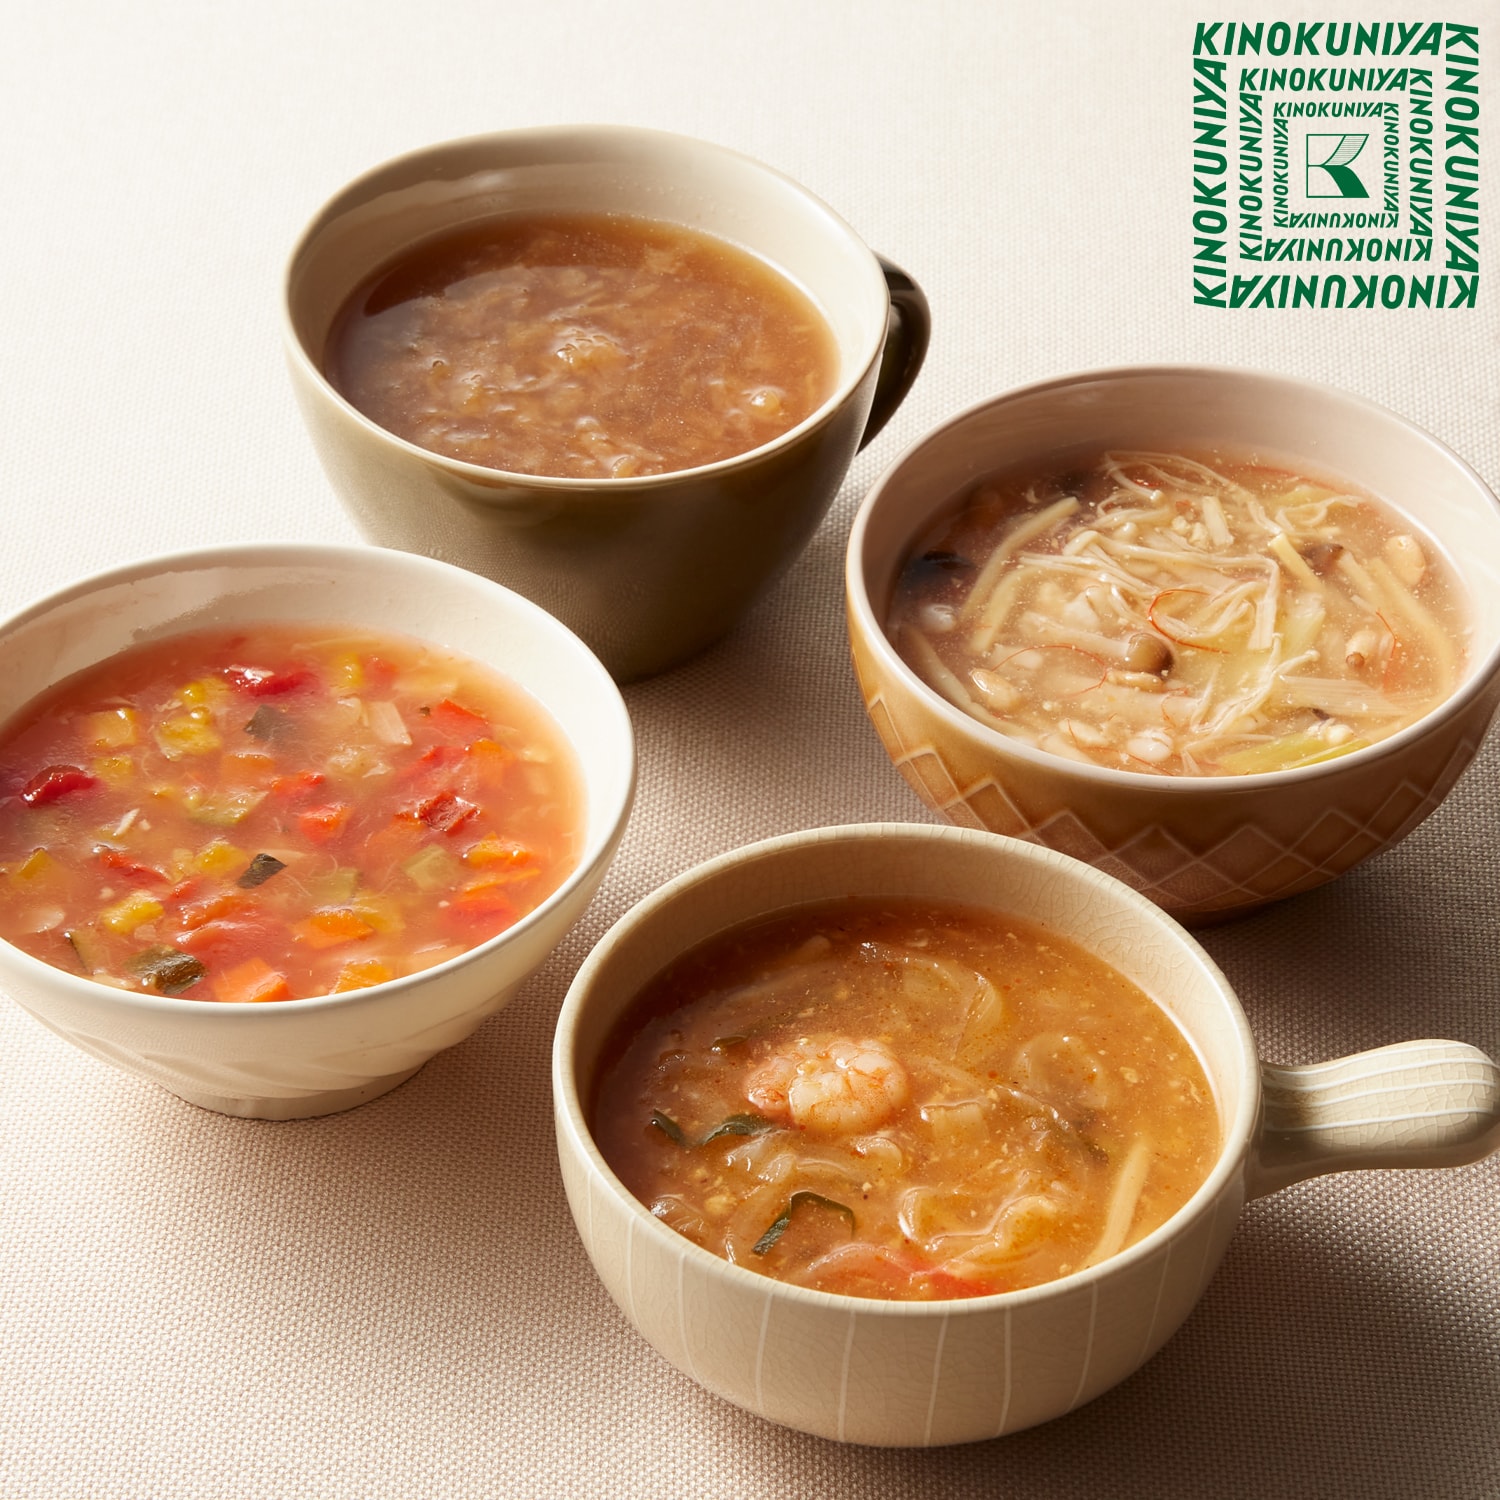 【紀ノ国屋】KINOKUNIYA's recipeスープ 8パック